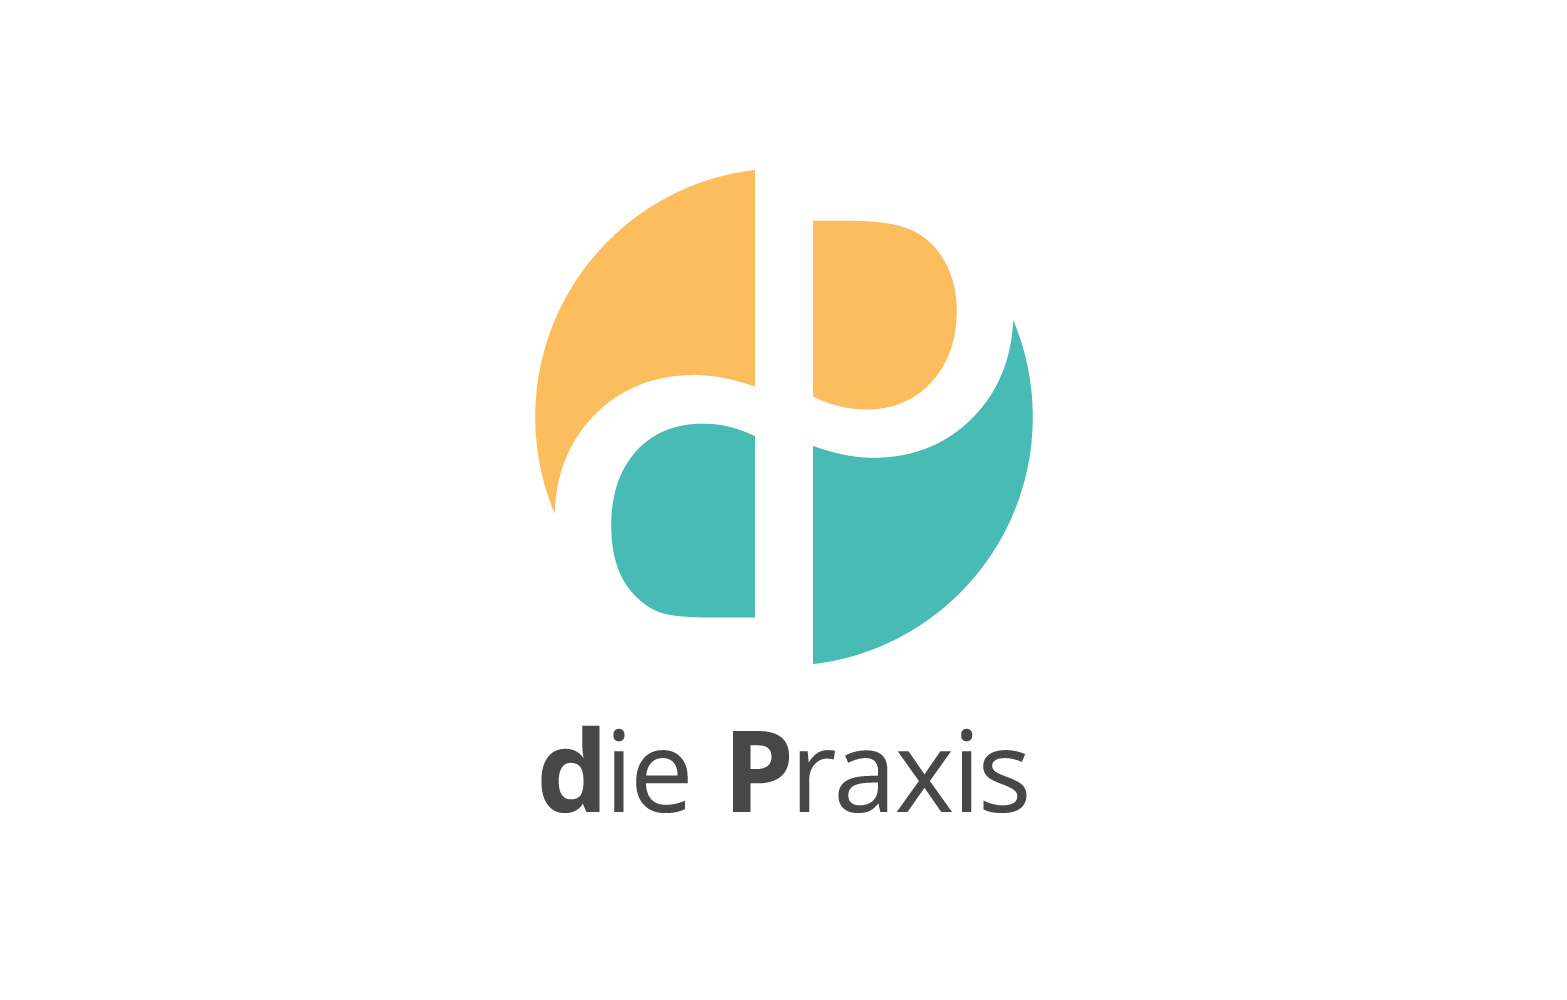 Logodesign für dP-die Praxis. Eine Grafik in Orange und Türkis mit dunkel grauer Typografie.